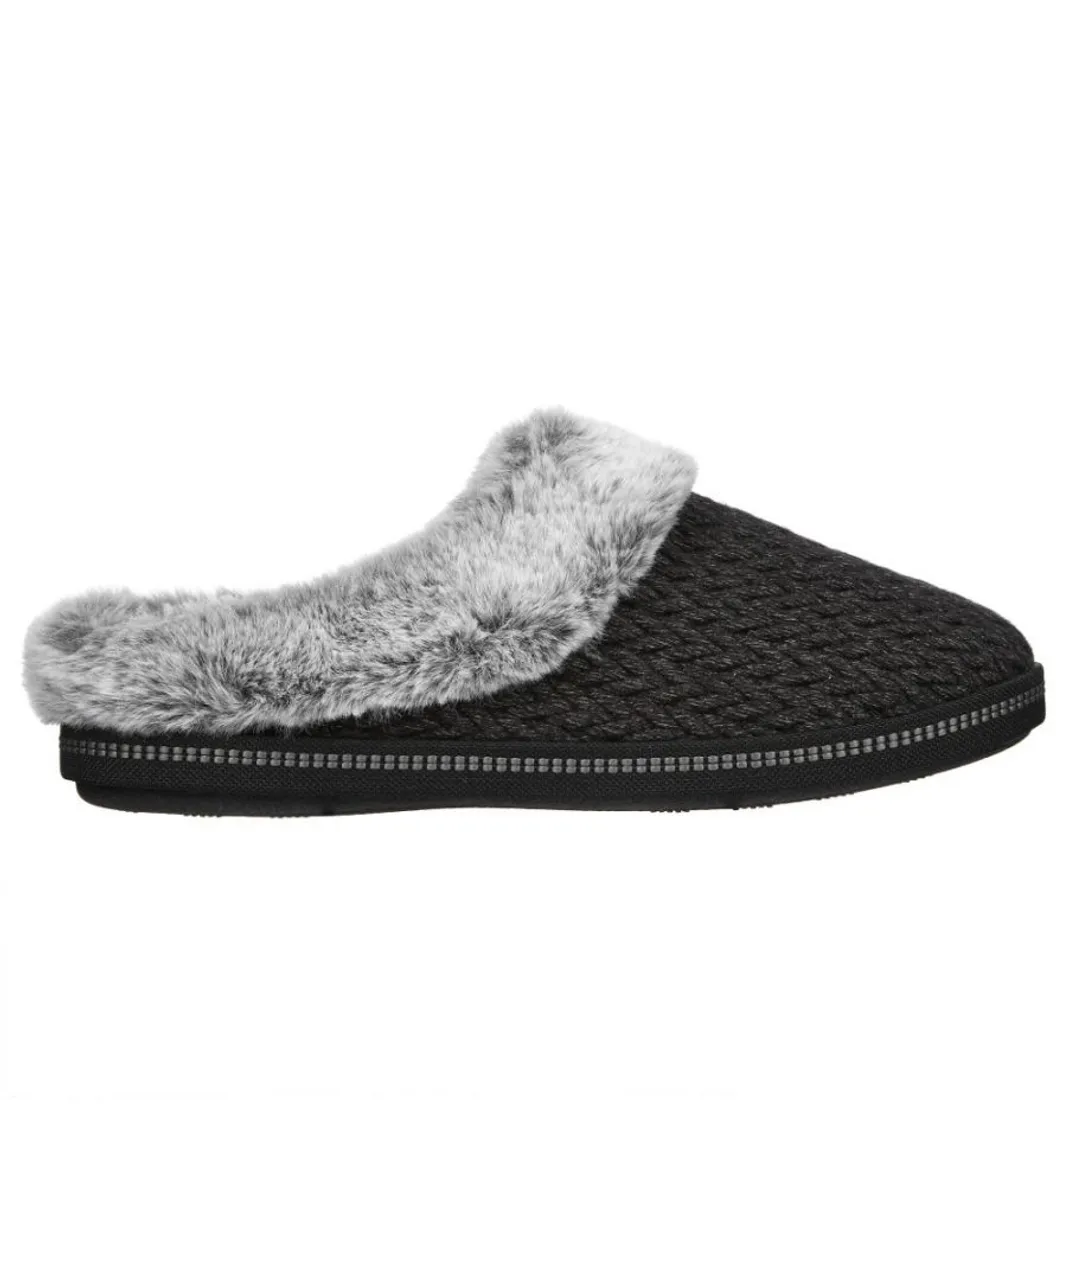 Skechers Womens Cozy Faux Fur Memory Foam Slippers - Black